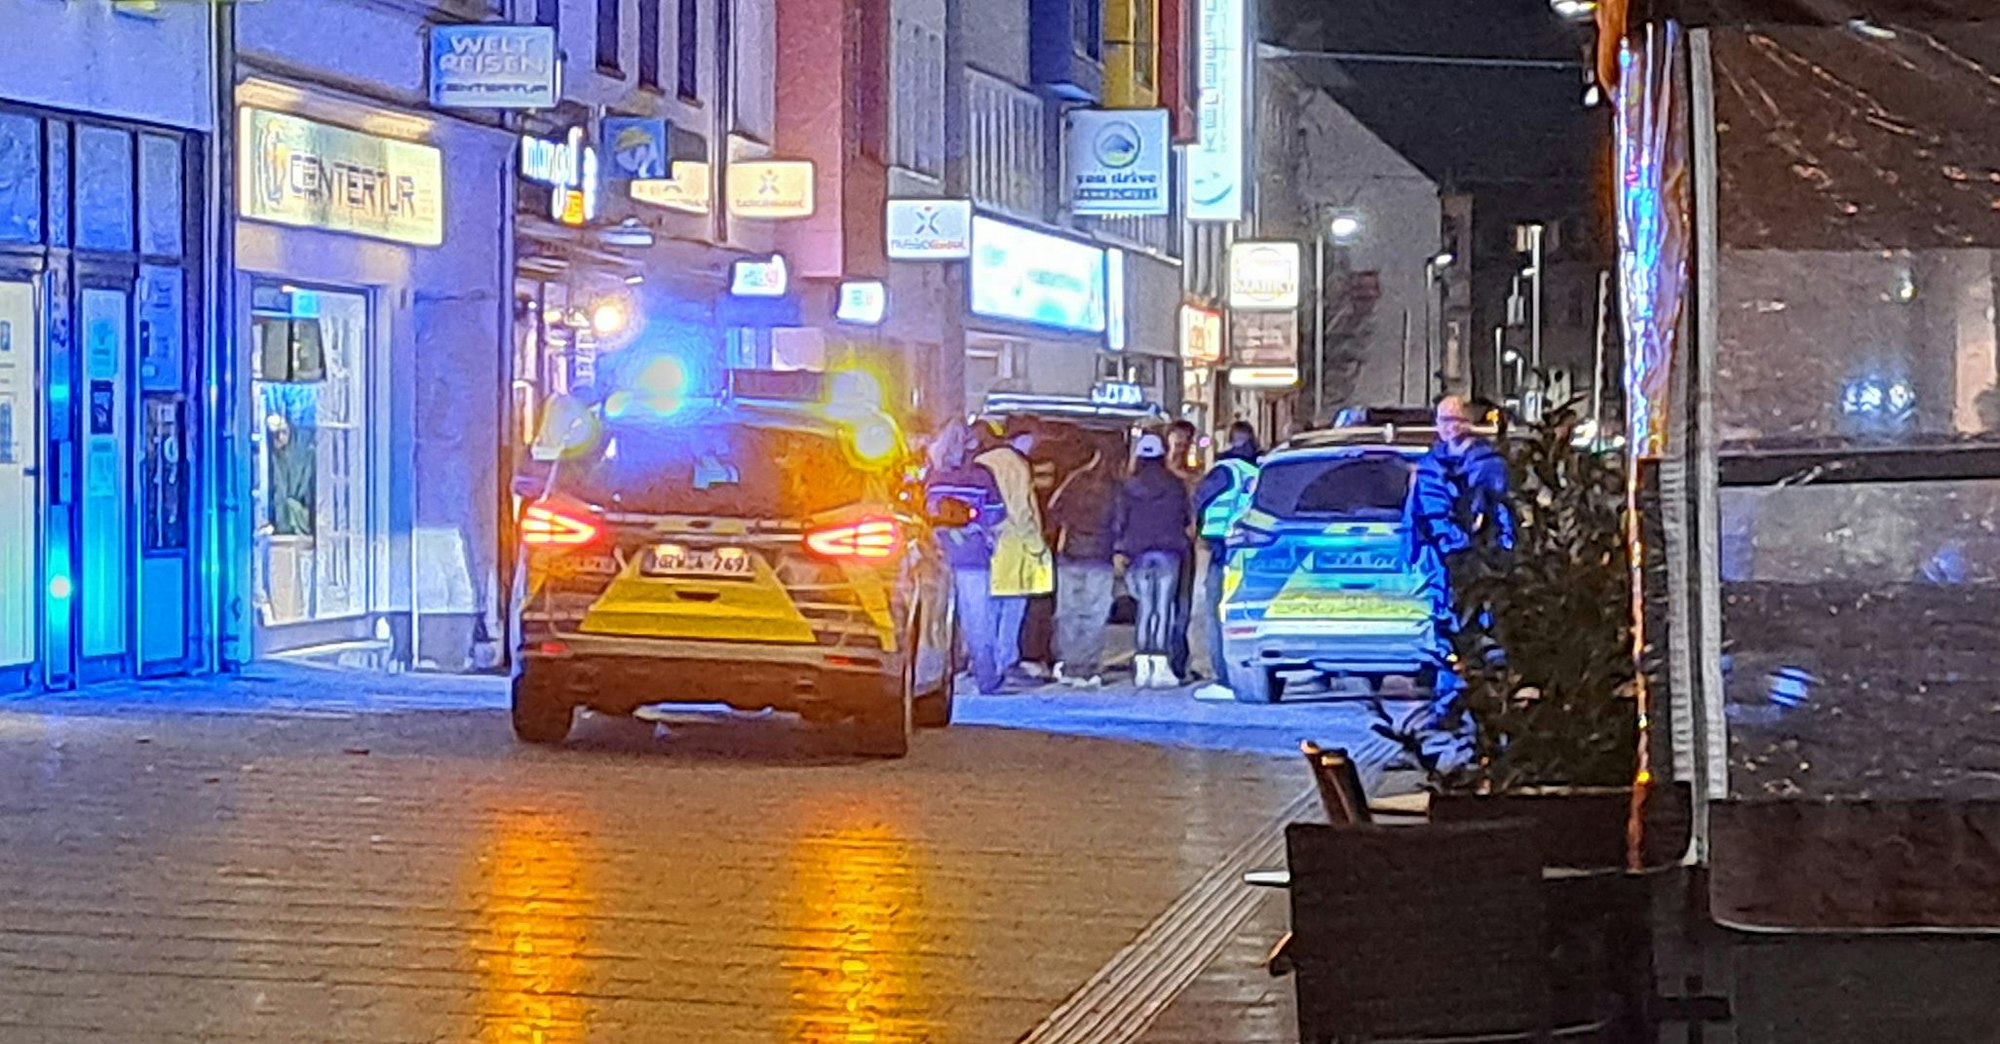 Polizeiautos stehen in einer Einkaufsstraße. Mehrere Personen stehen zwischen den Eisatzautos.